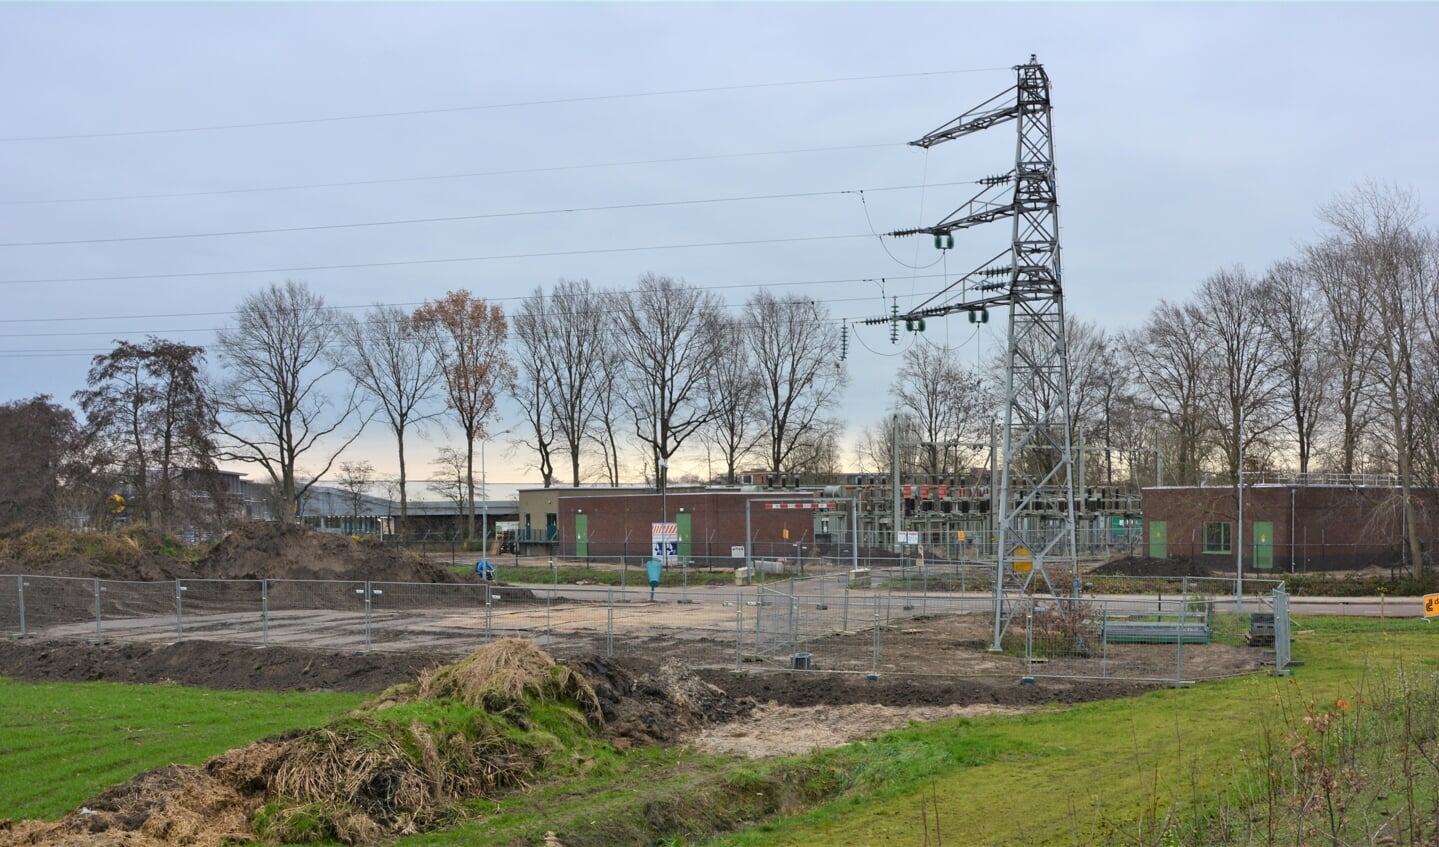 Het onderverdeelstation aan de Oldenbarnevelderweg wordt momenteel uitgebreid voor extra stroomcapaciteit.